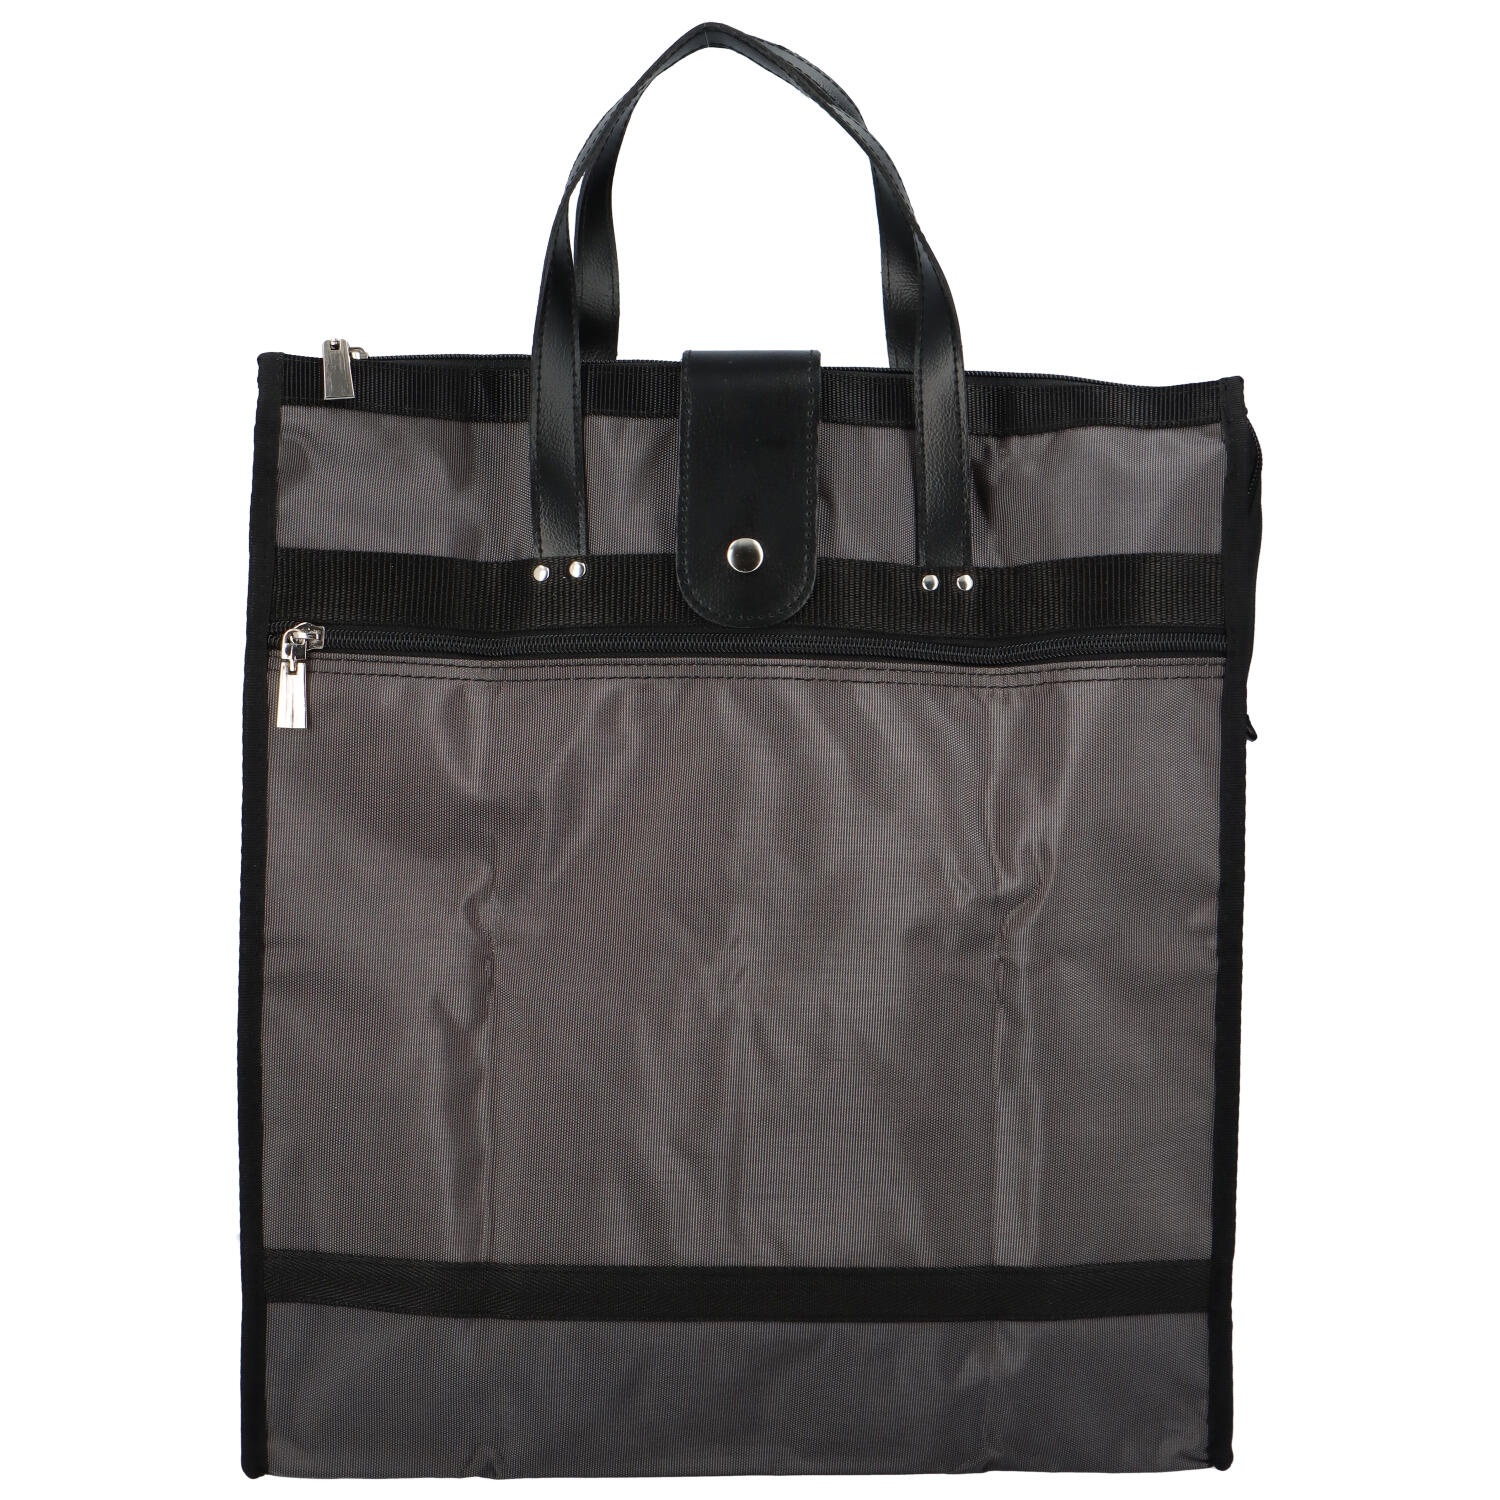 Velká moderní nákupní taška tmavě šedá - SendiDesign Milenium